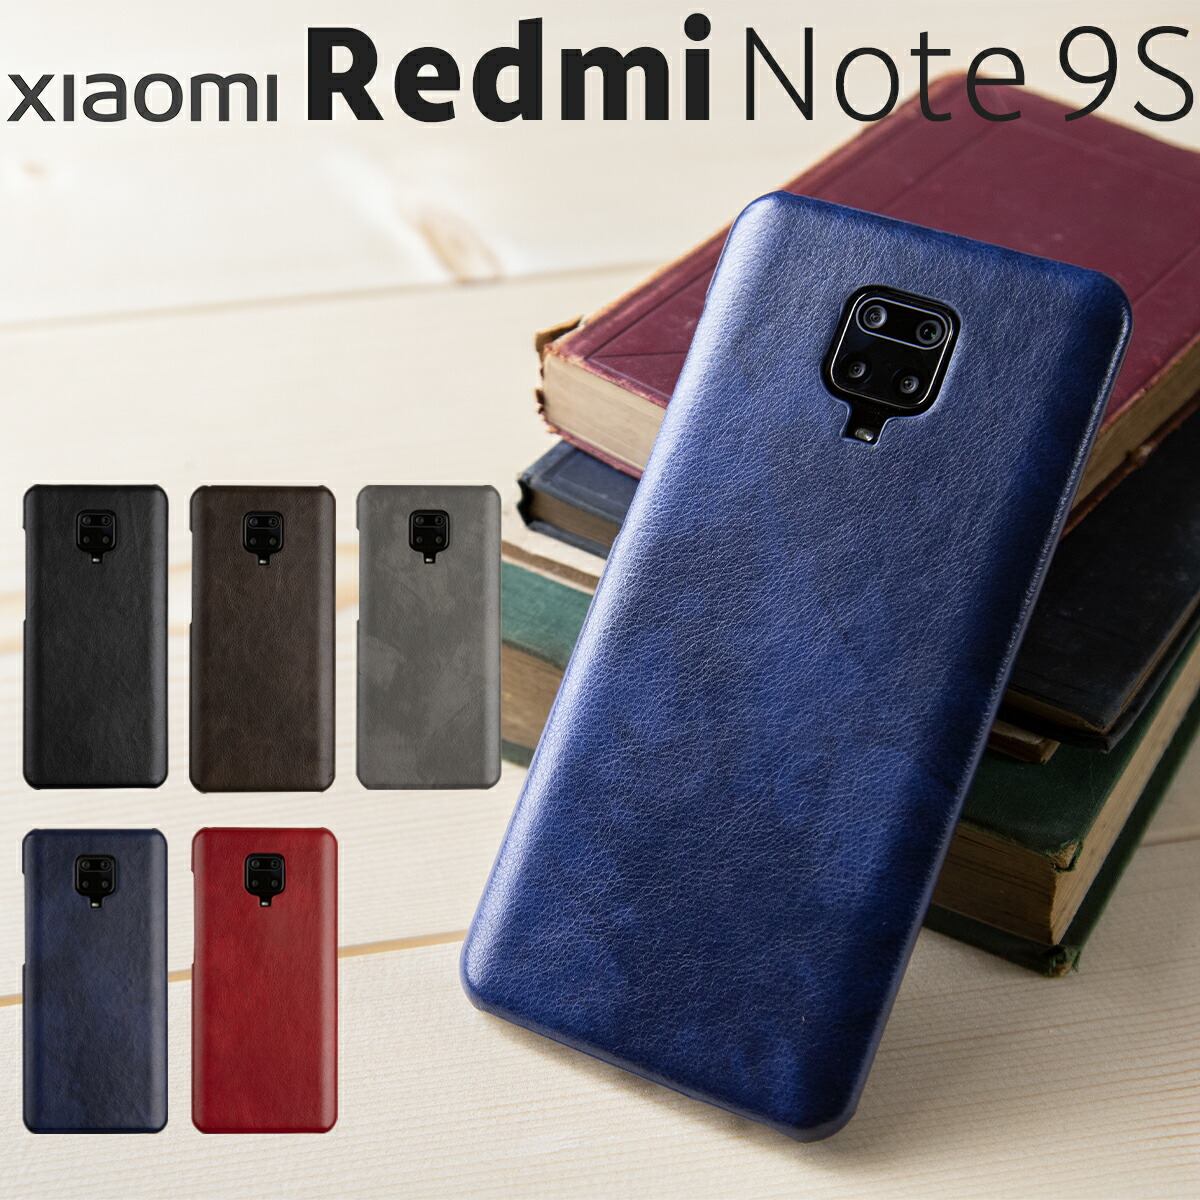 【最大30 OFFクーポン】 Xiaomi Redmi Note 9S ケース Xiaomi Redmi Note 9S カバー スマホケース 韓国 スマホ カバー メンズ ブランド レザーハードケース スマホ カバー レザー 革 Xiaomi シャオミ スマホカバー 携帯ケース 携帯カバー